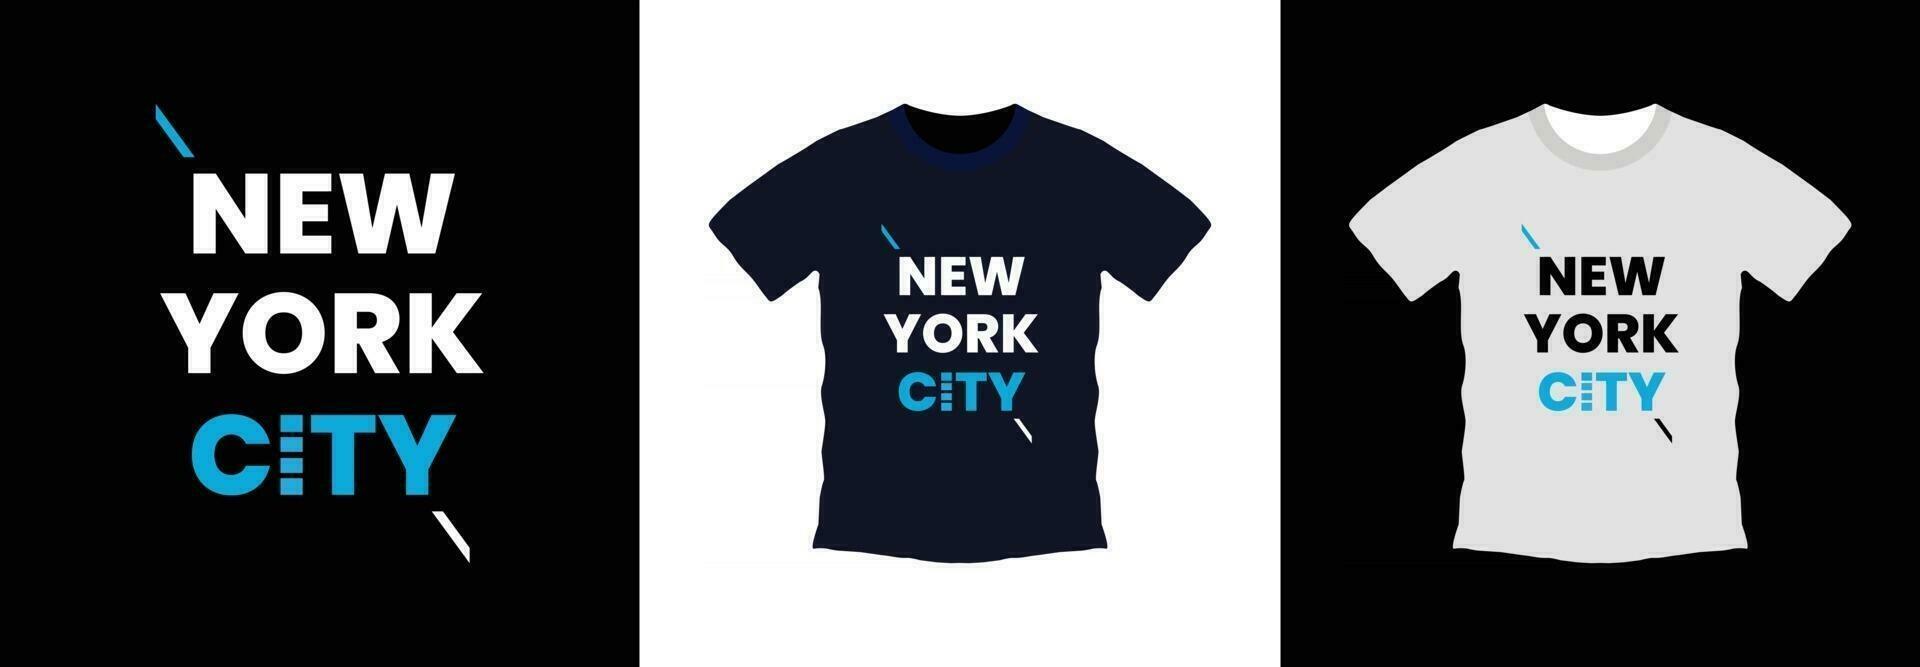 Novo Iorque cidade tipografia camiseta Projeto. impressão pronto vetor ilustração modelo. global amostras